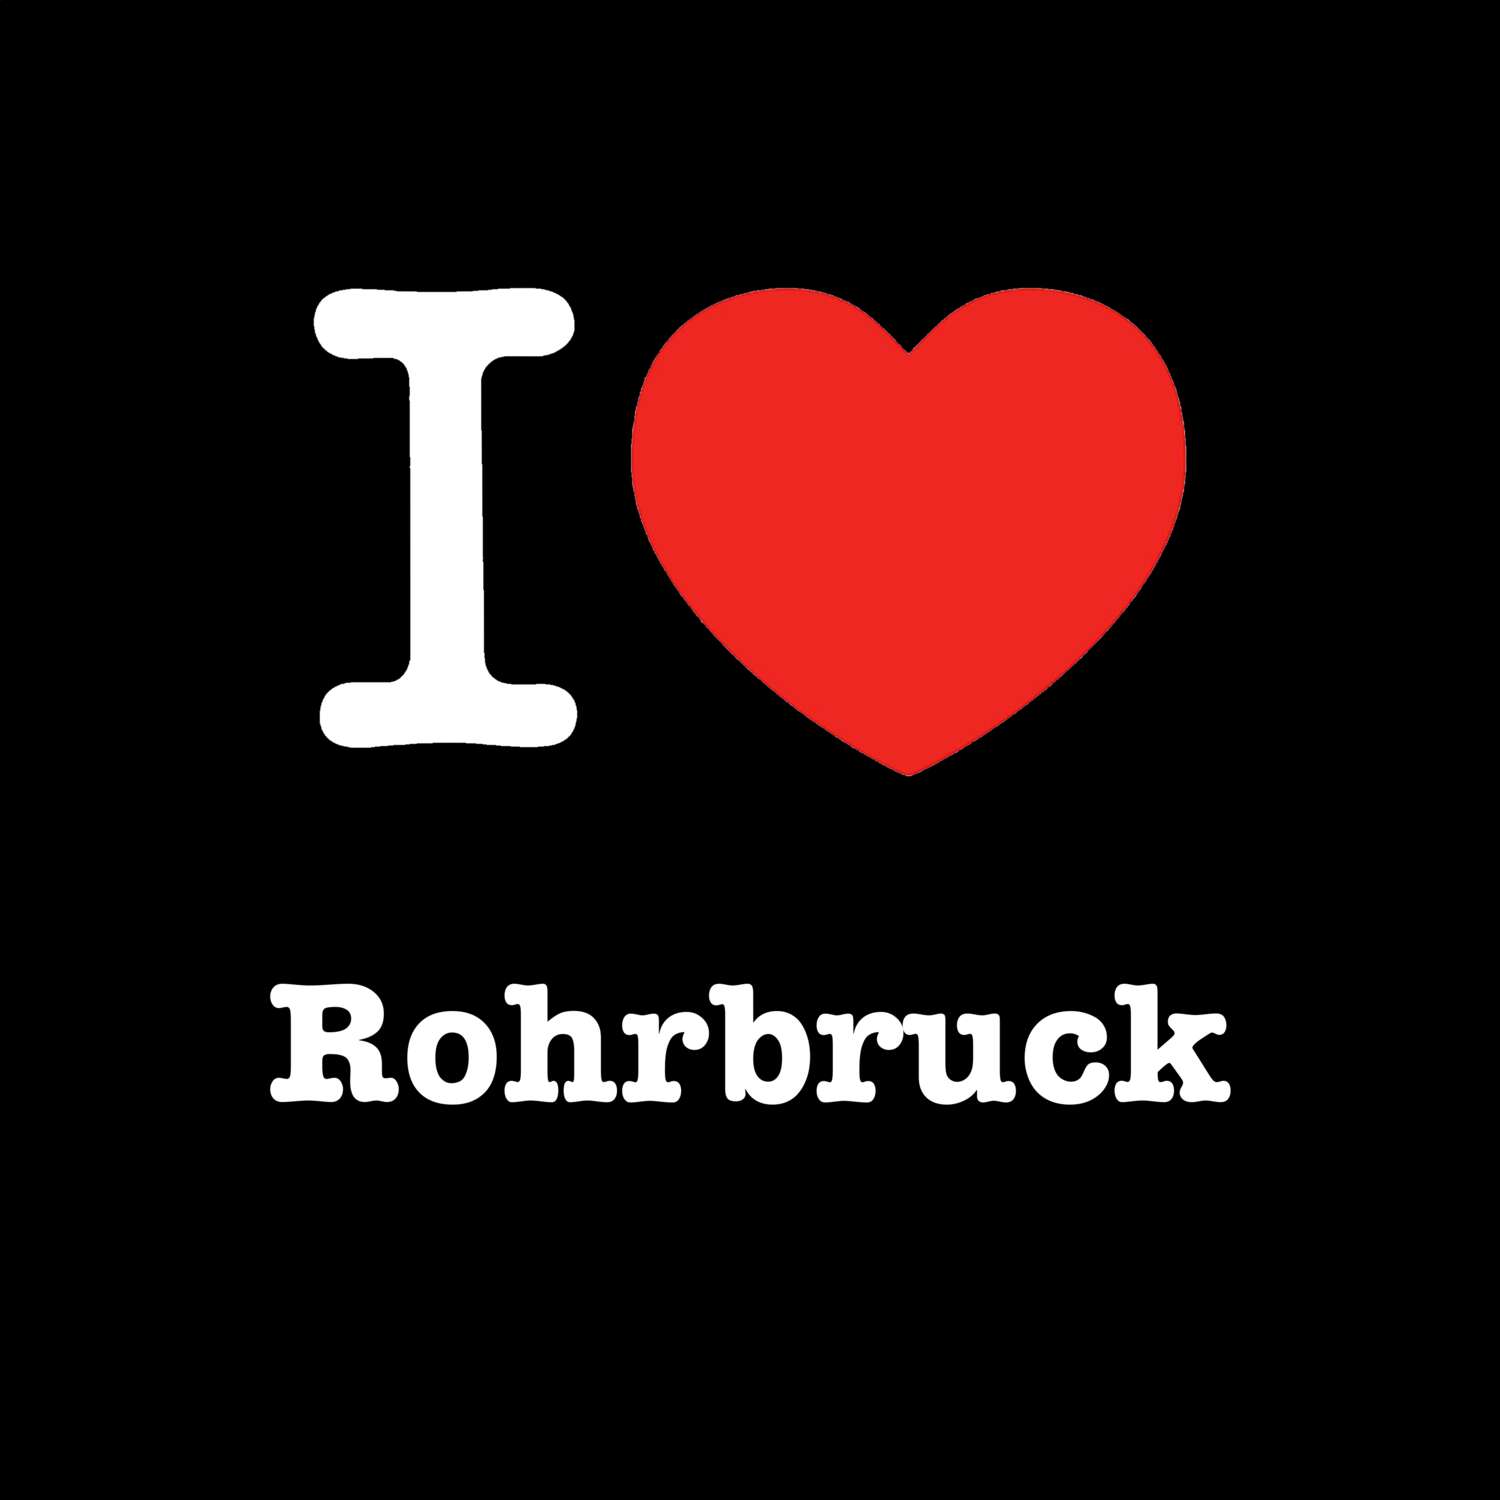 Rohrbruck T-Shirt »I love«